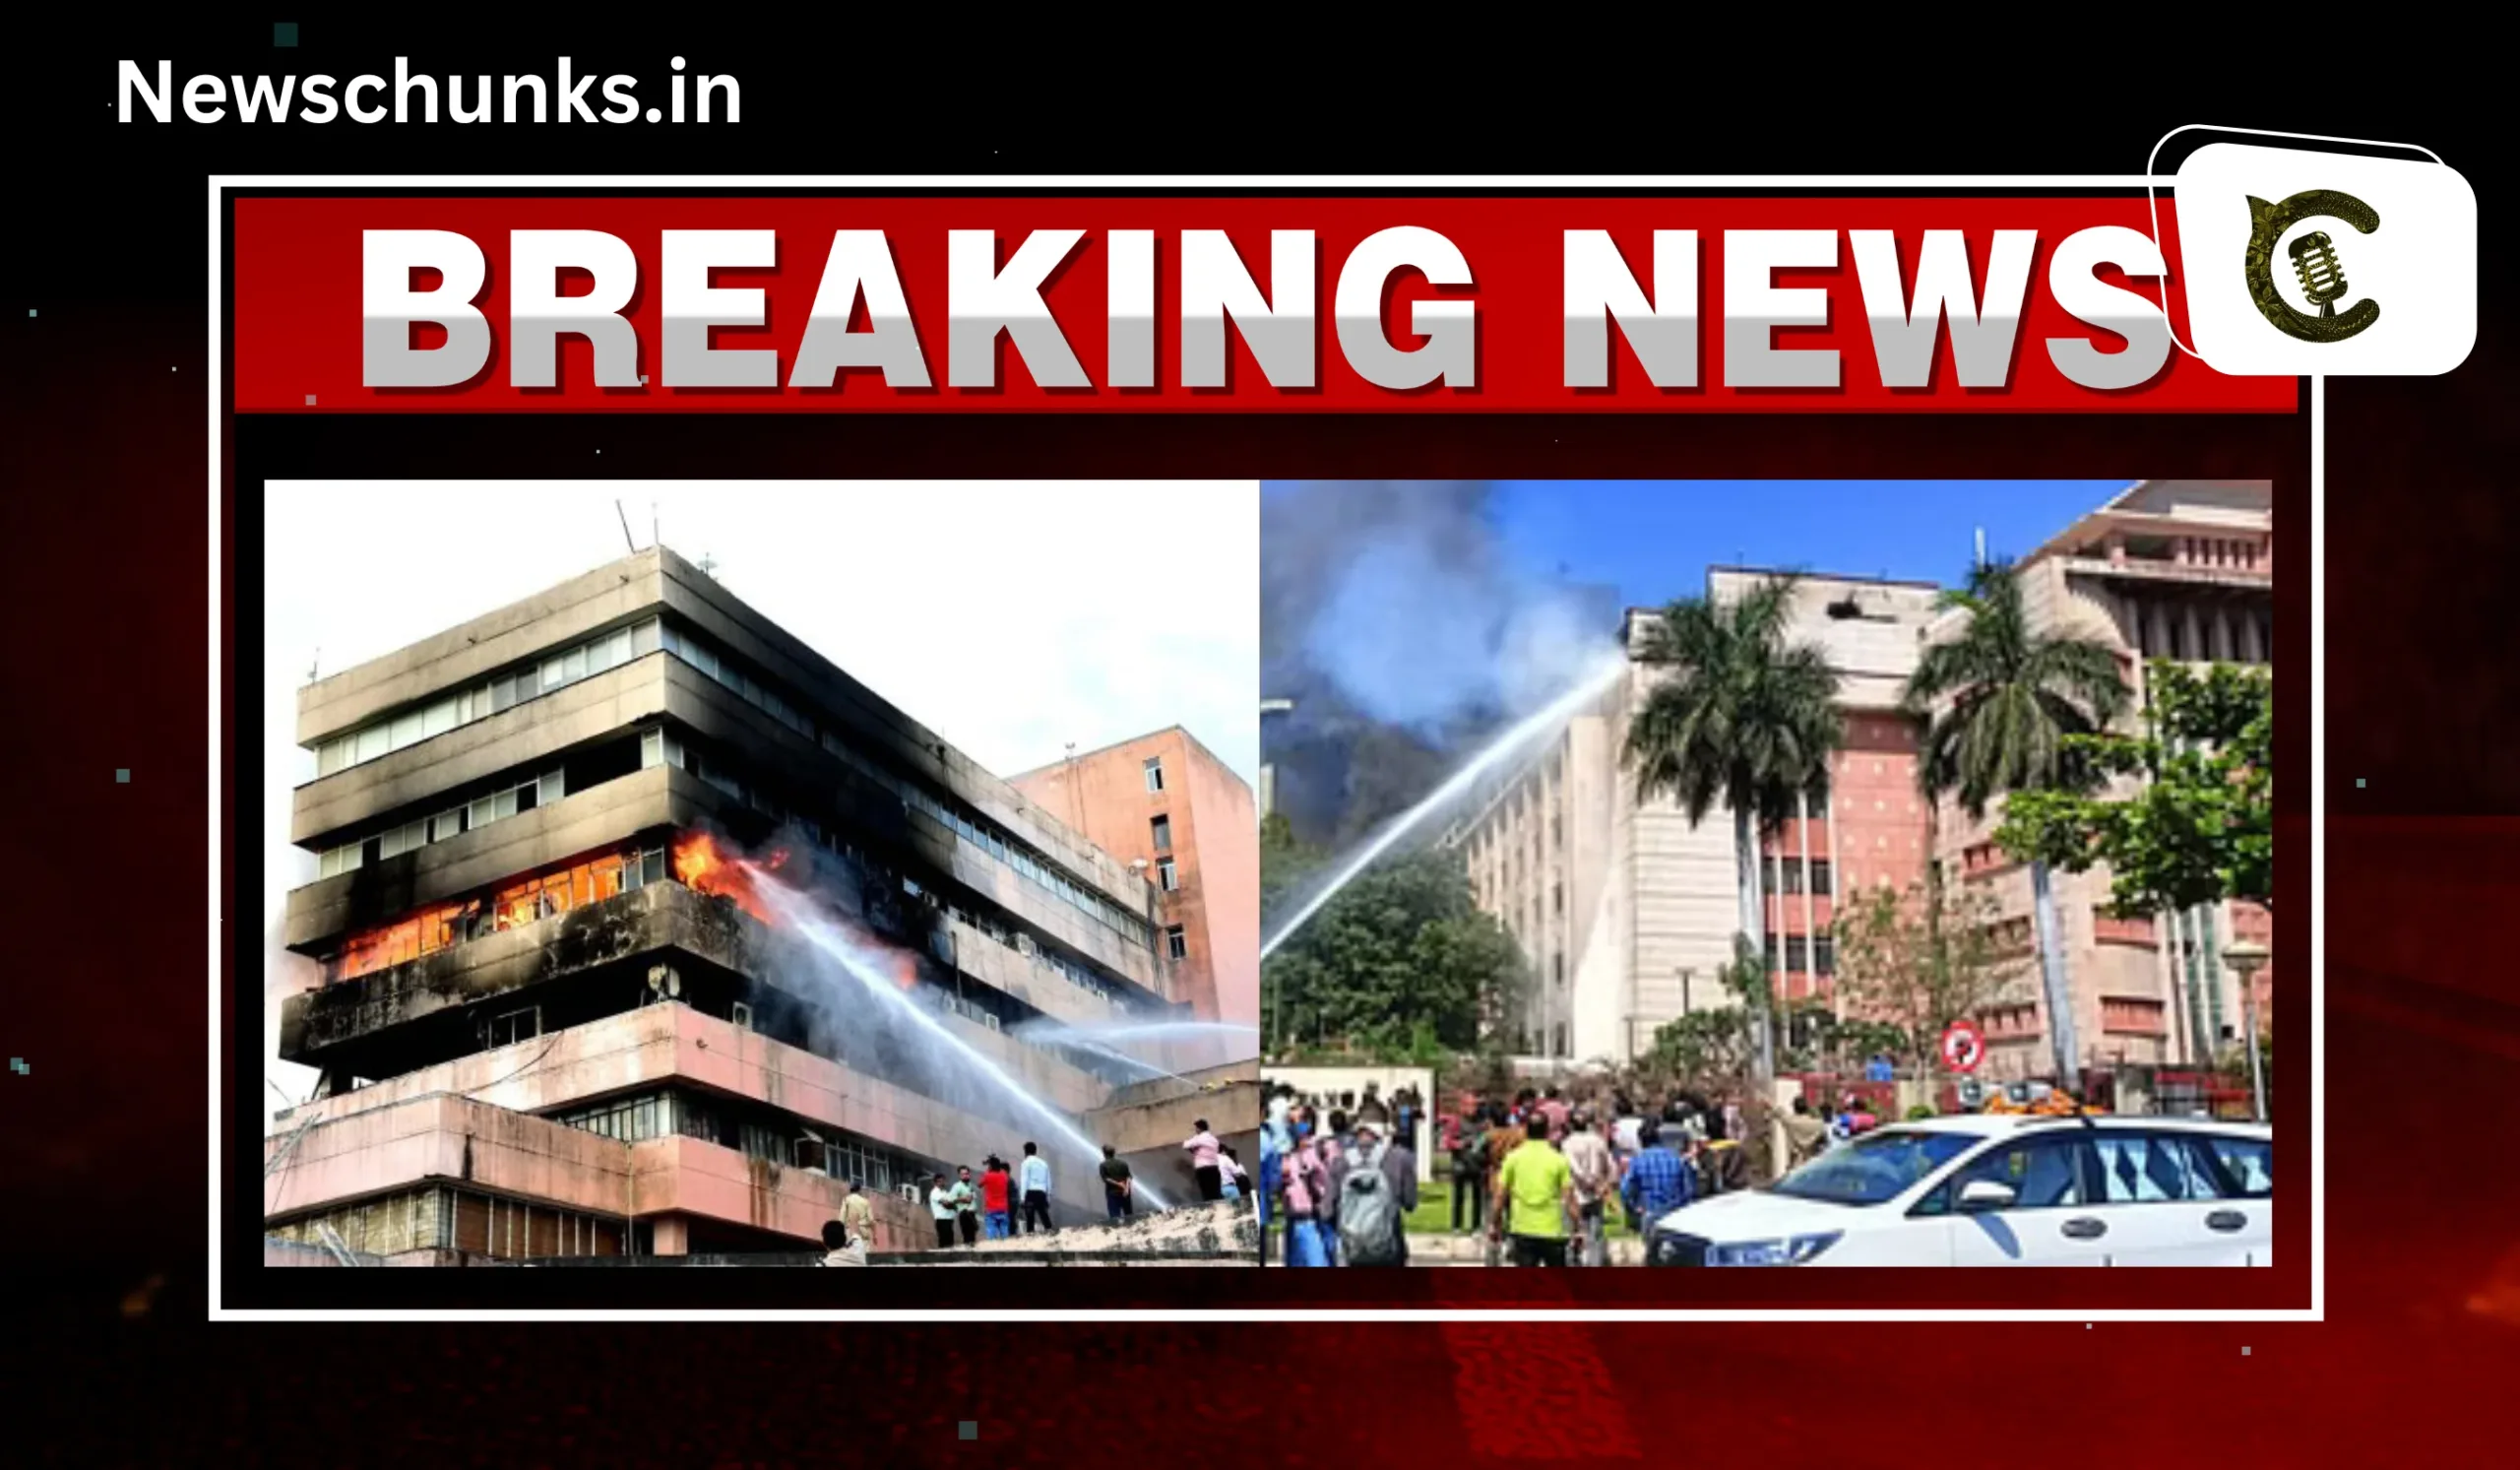 Fire broke out in Mantralaya building Bhopal: मध्य प्रदेश के मंत्रालय भवन में लगी भीषण आग, कई लोग फंसे, मौके पर पहुंची फायर बिग्रेड